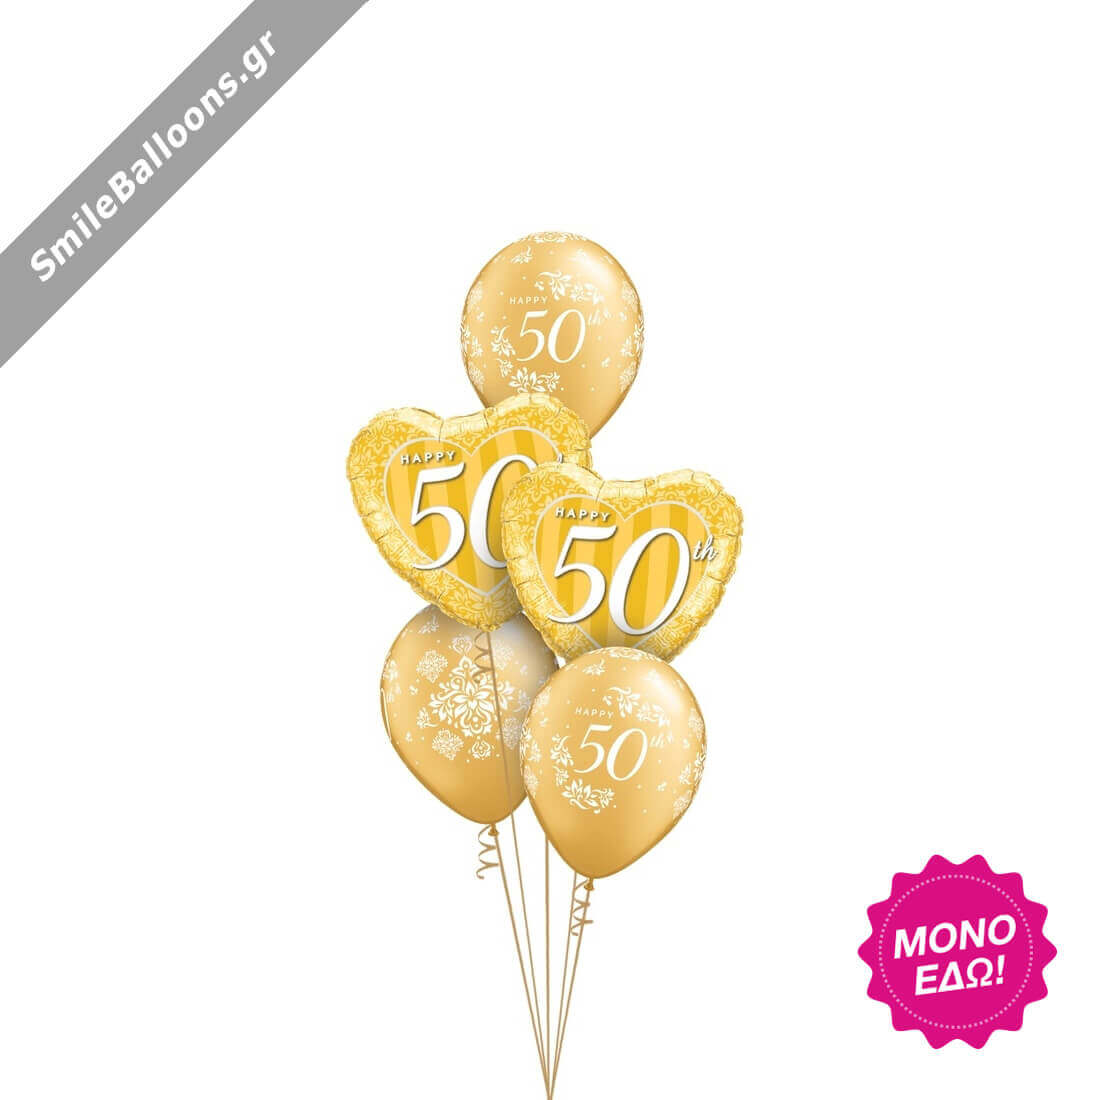 Μπουκέτο μπαλονιών "Happy 50th Anniversary Gold"